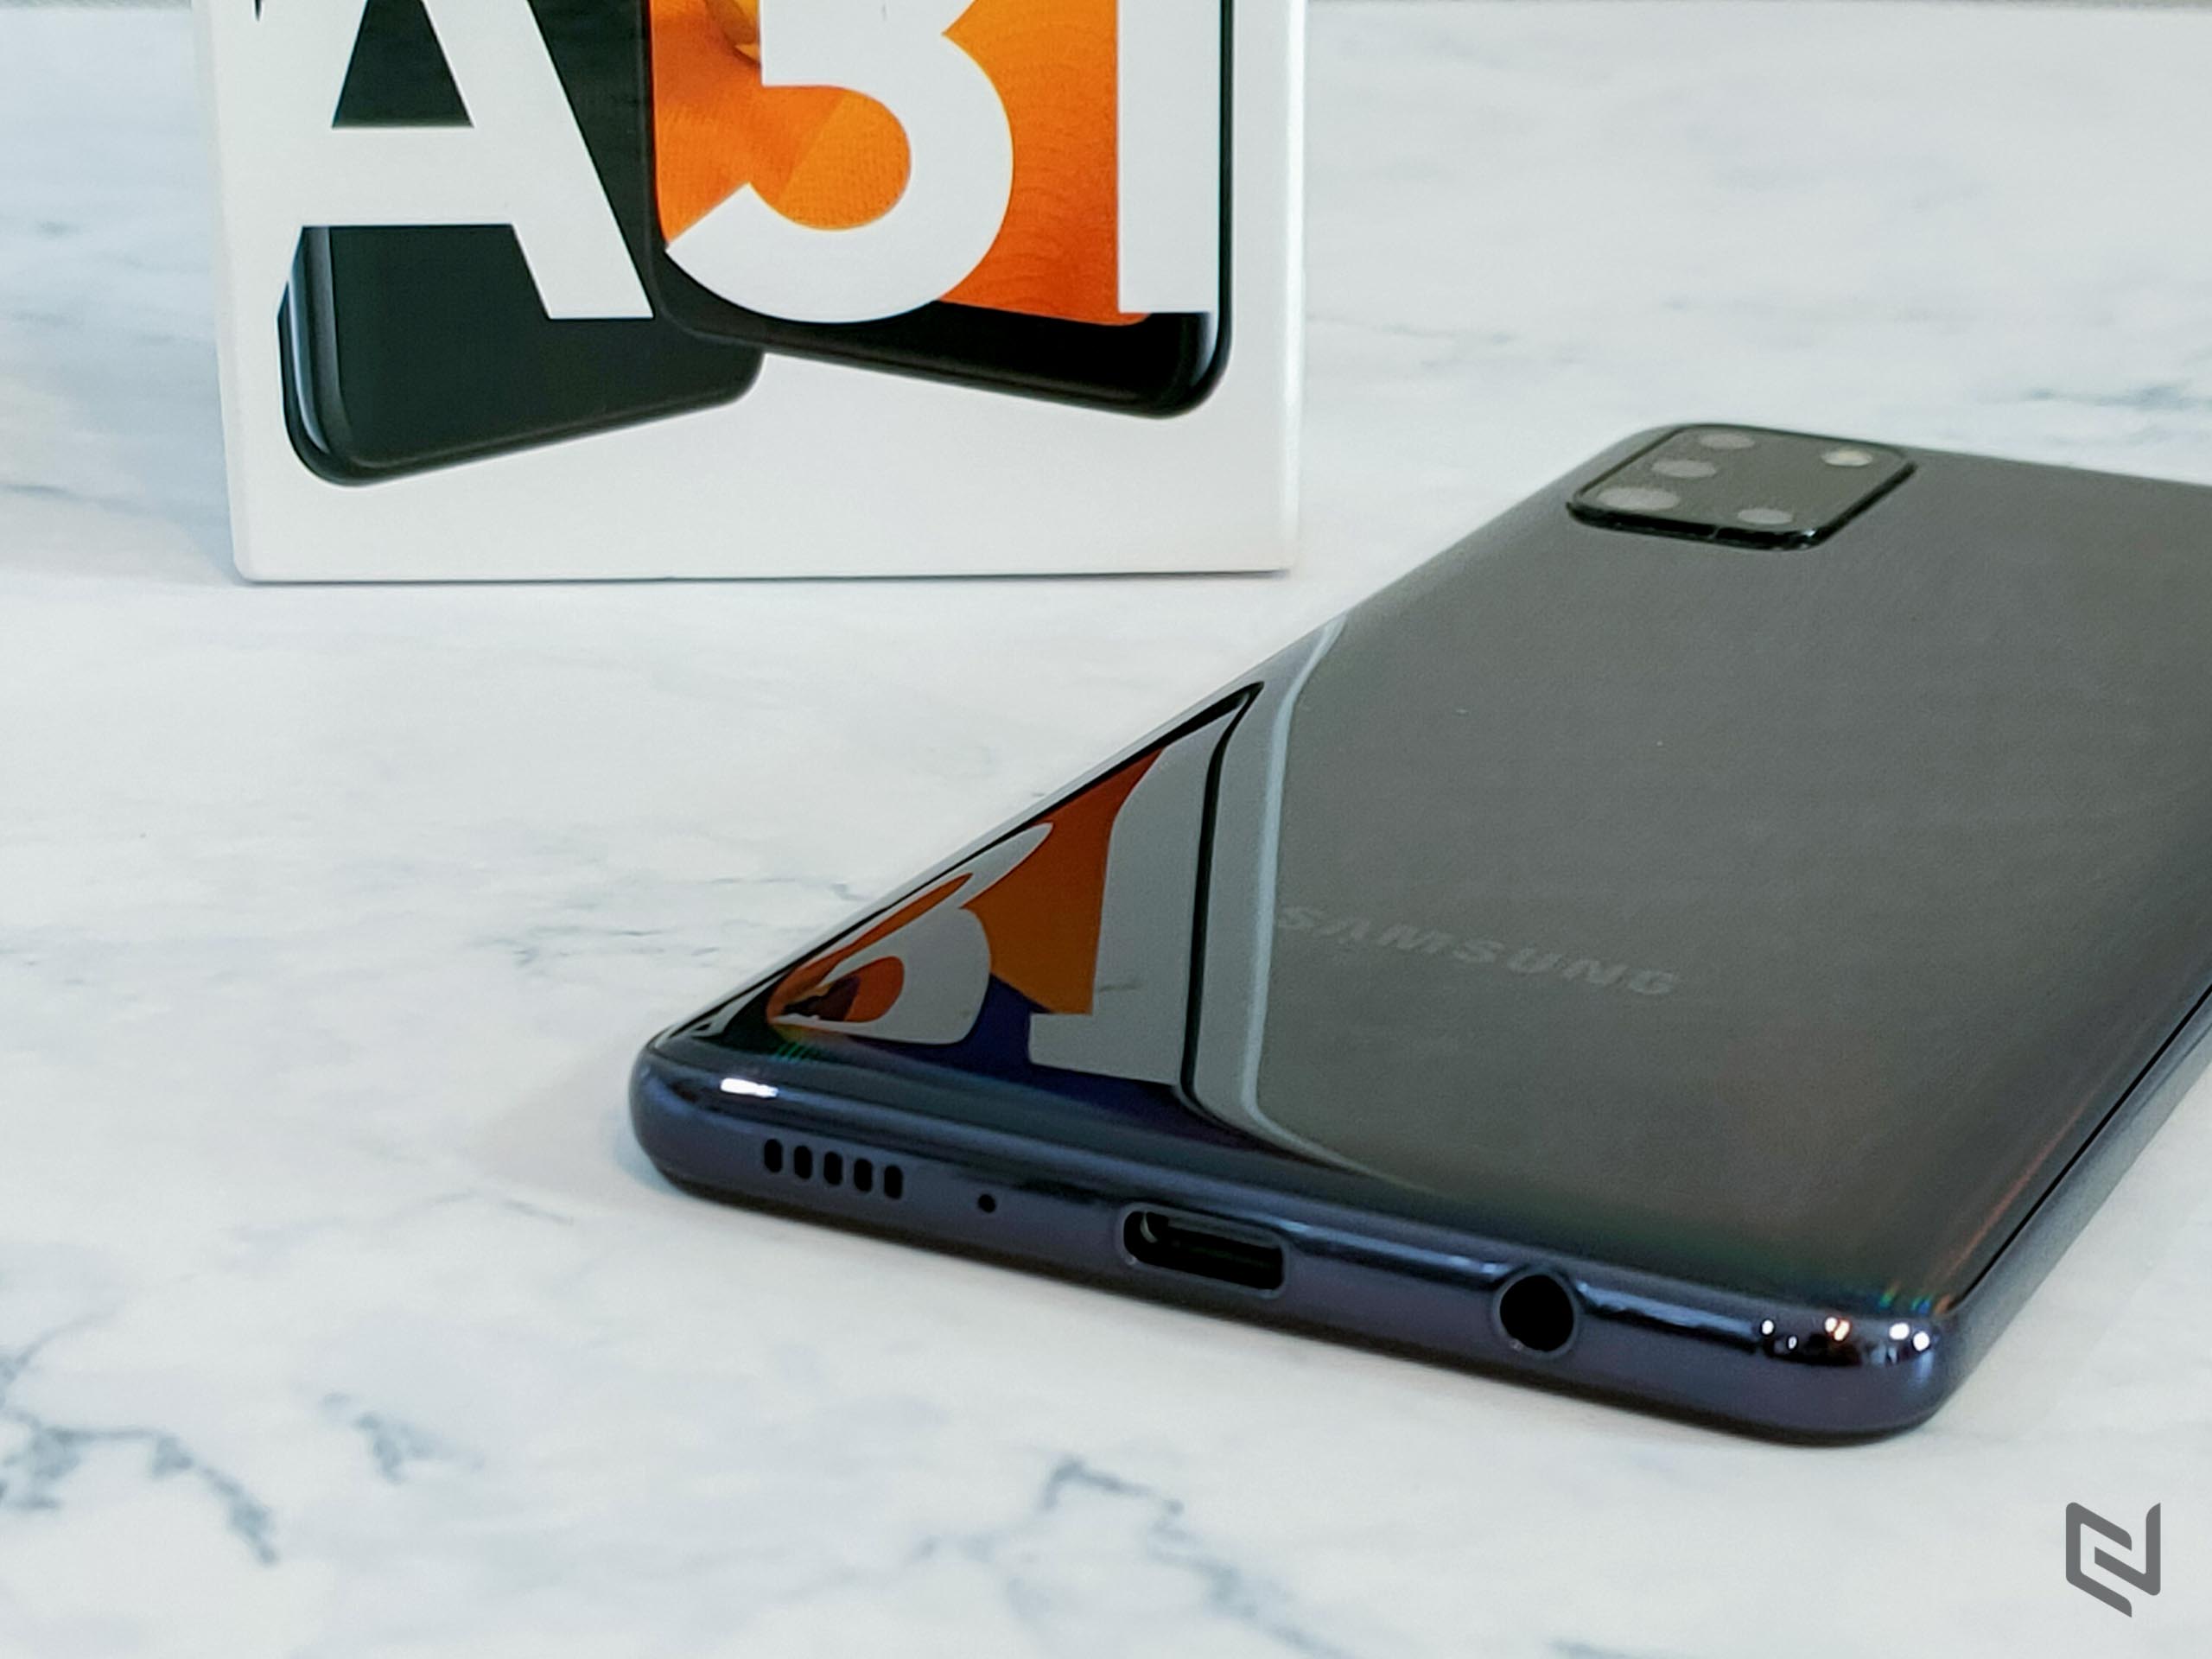 Mở hộp và đánh giá nhanh Galaxy A31: Pin khủng, 4 camera đa năng, hiệu năng khá